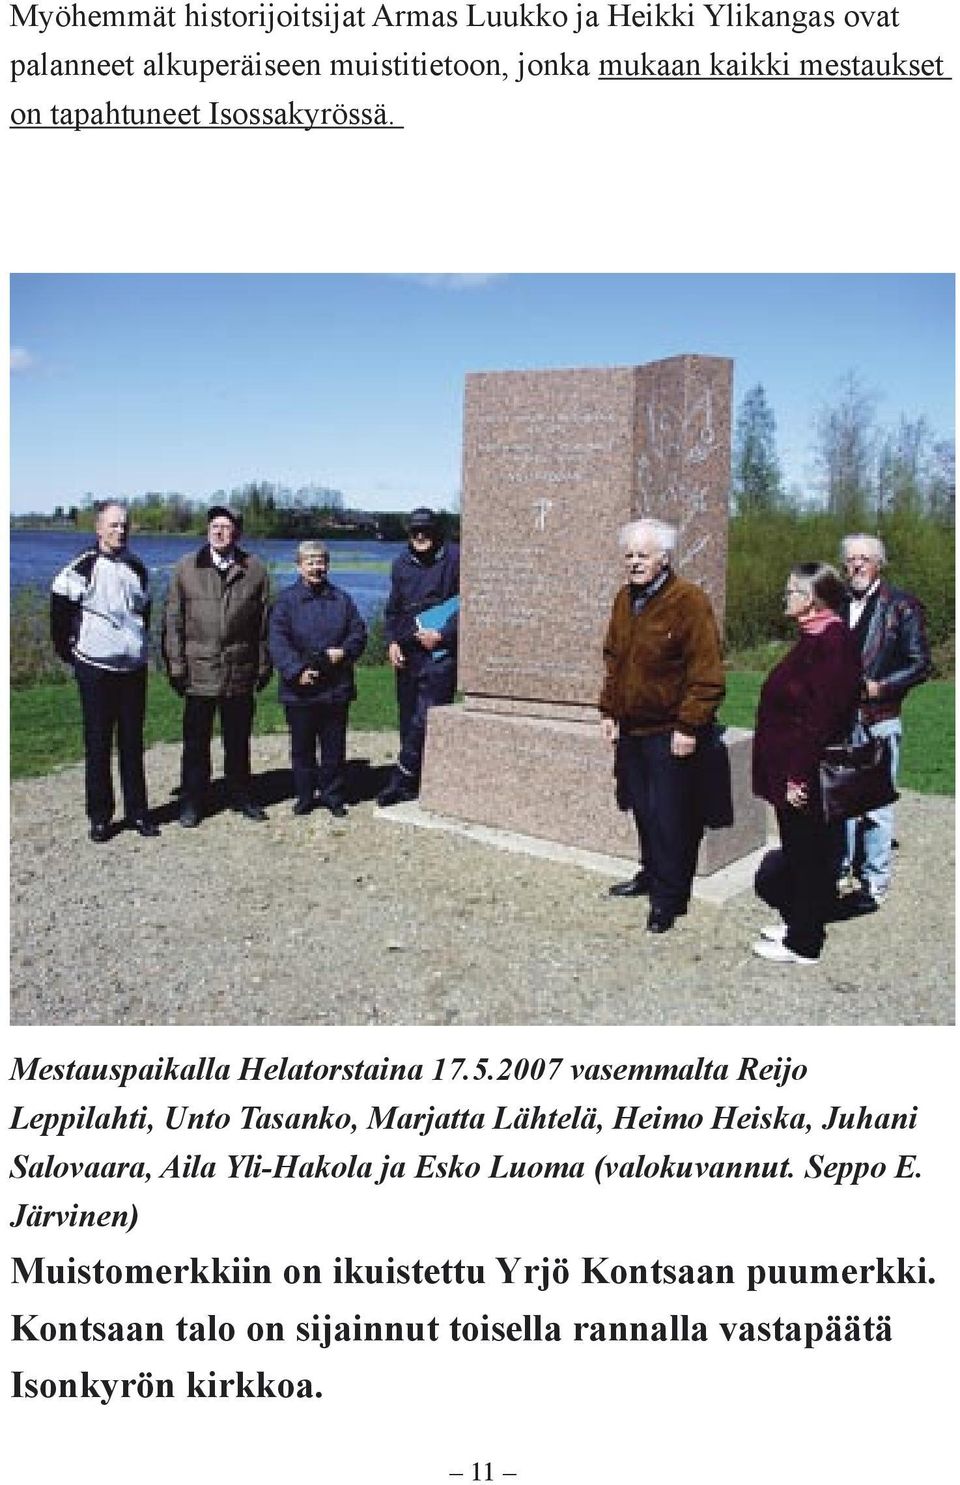 2007 vasemmalta Reijo Leppilahti, Unto Tasanko, Marjatta Lähtelä, Heimo Heiska, Juhani Salovaara, Aila Yli-Hakola ja Esko